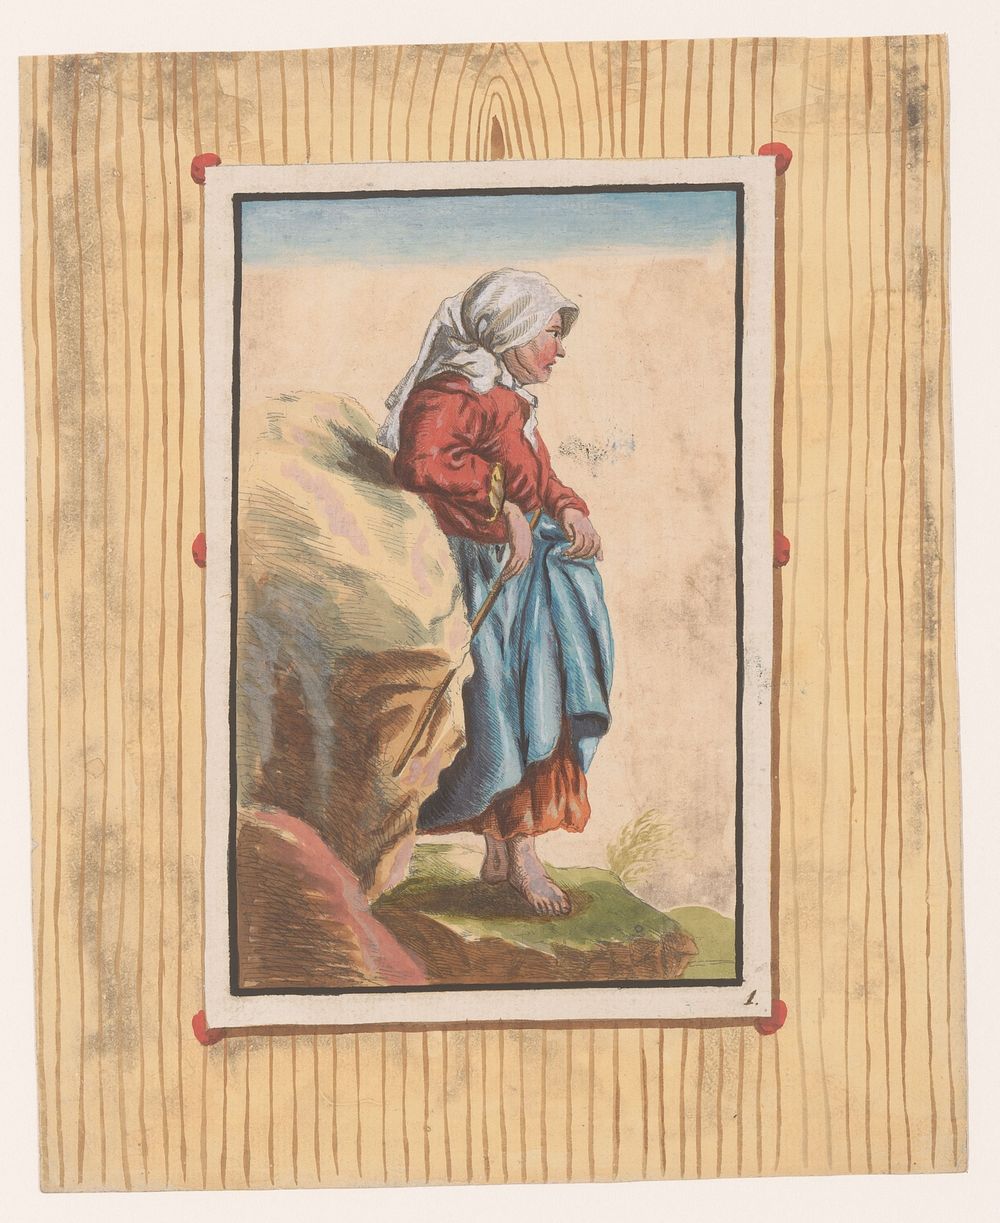 Staande vrouw met blote voeten en stok (c. 1740 - c. 1760) by anonymous